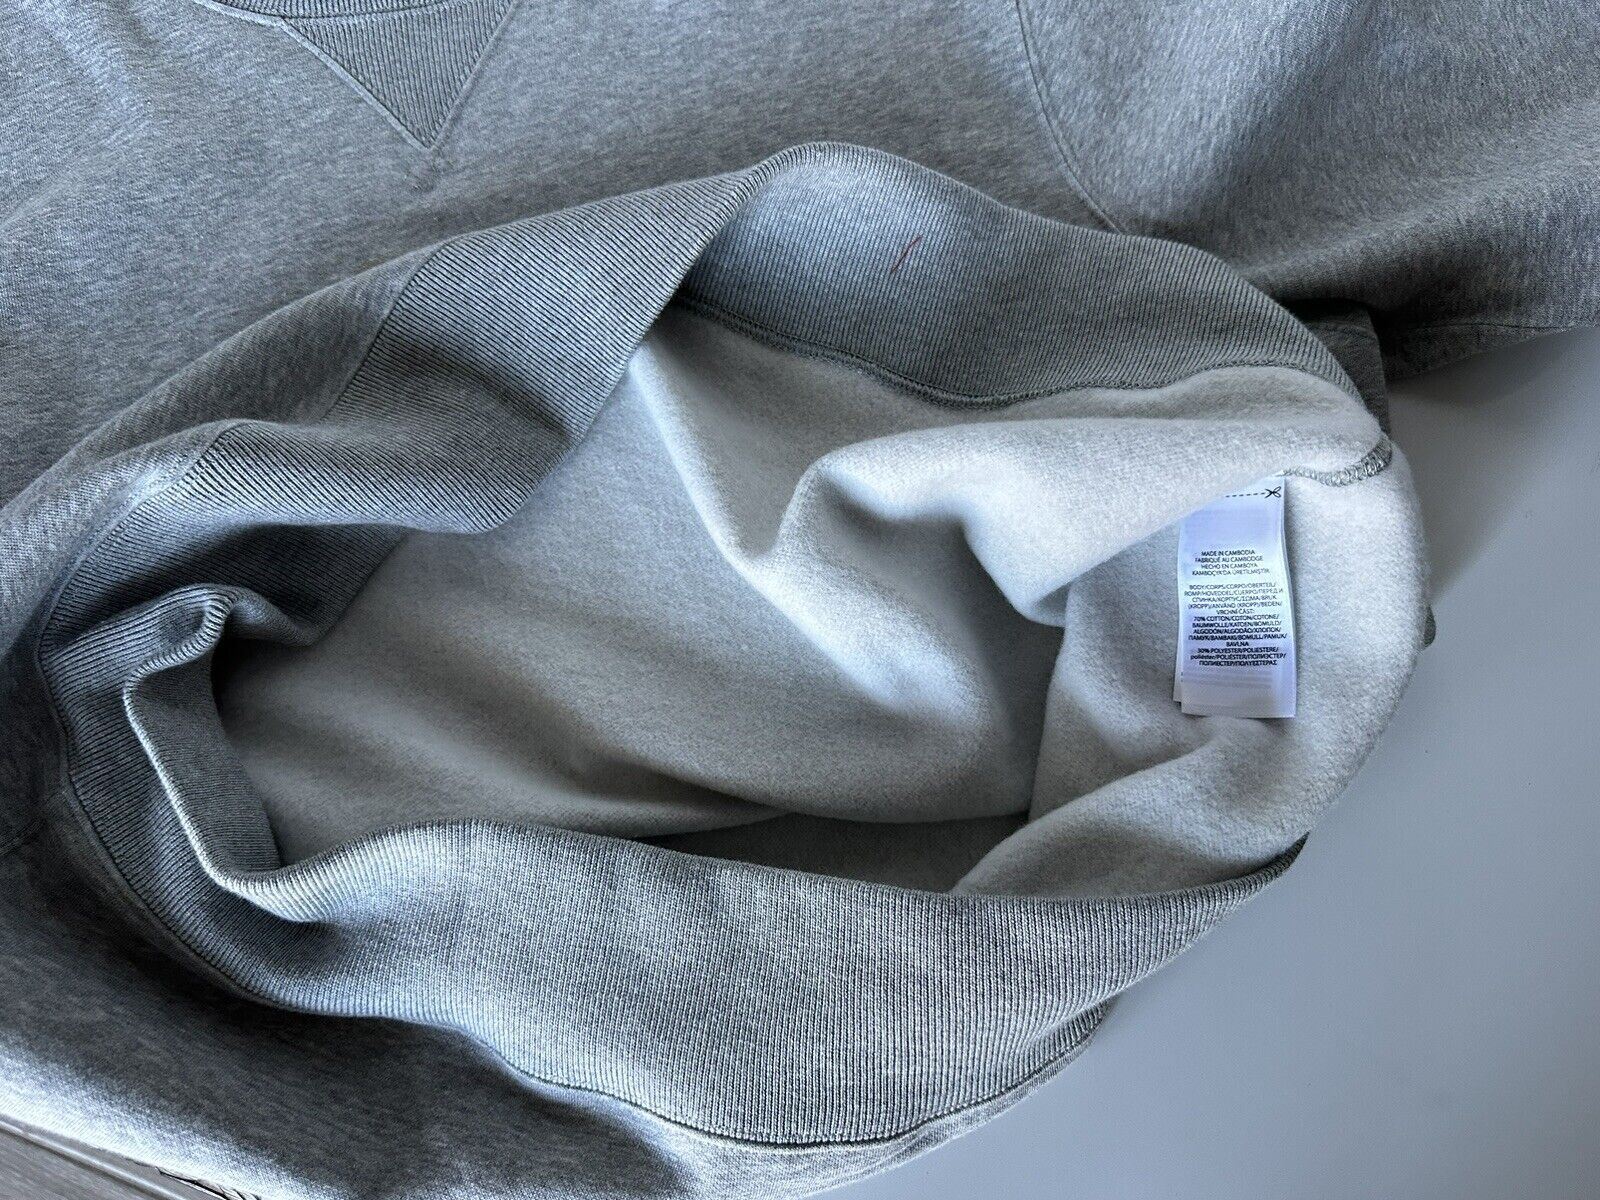 Новый свитшот Polo Ralph Lauren Bear, серый цвет 2XL/2TG, стоимостью 148 долларов. 